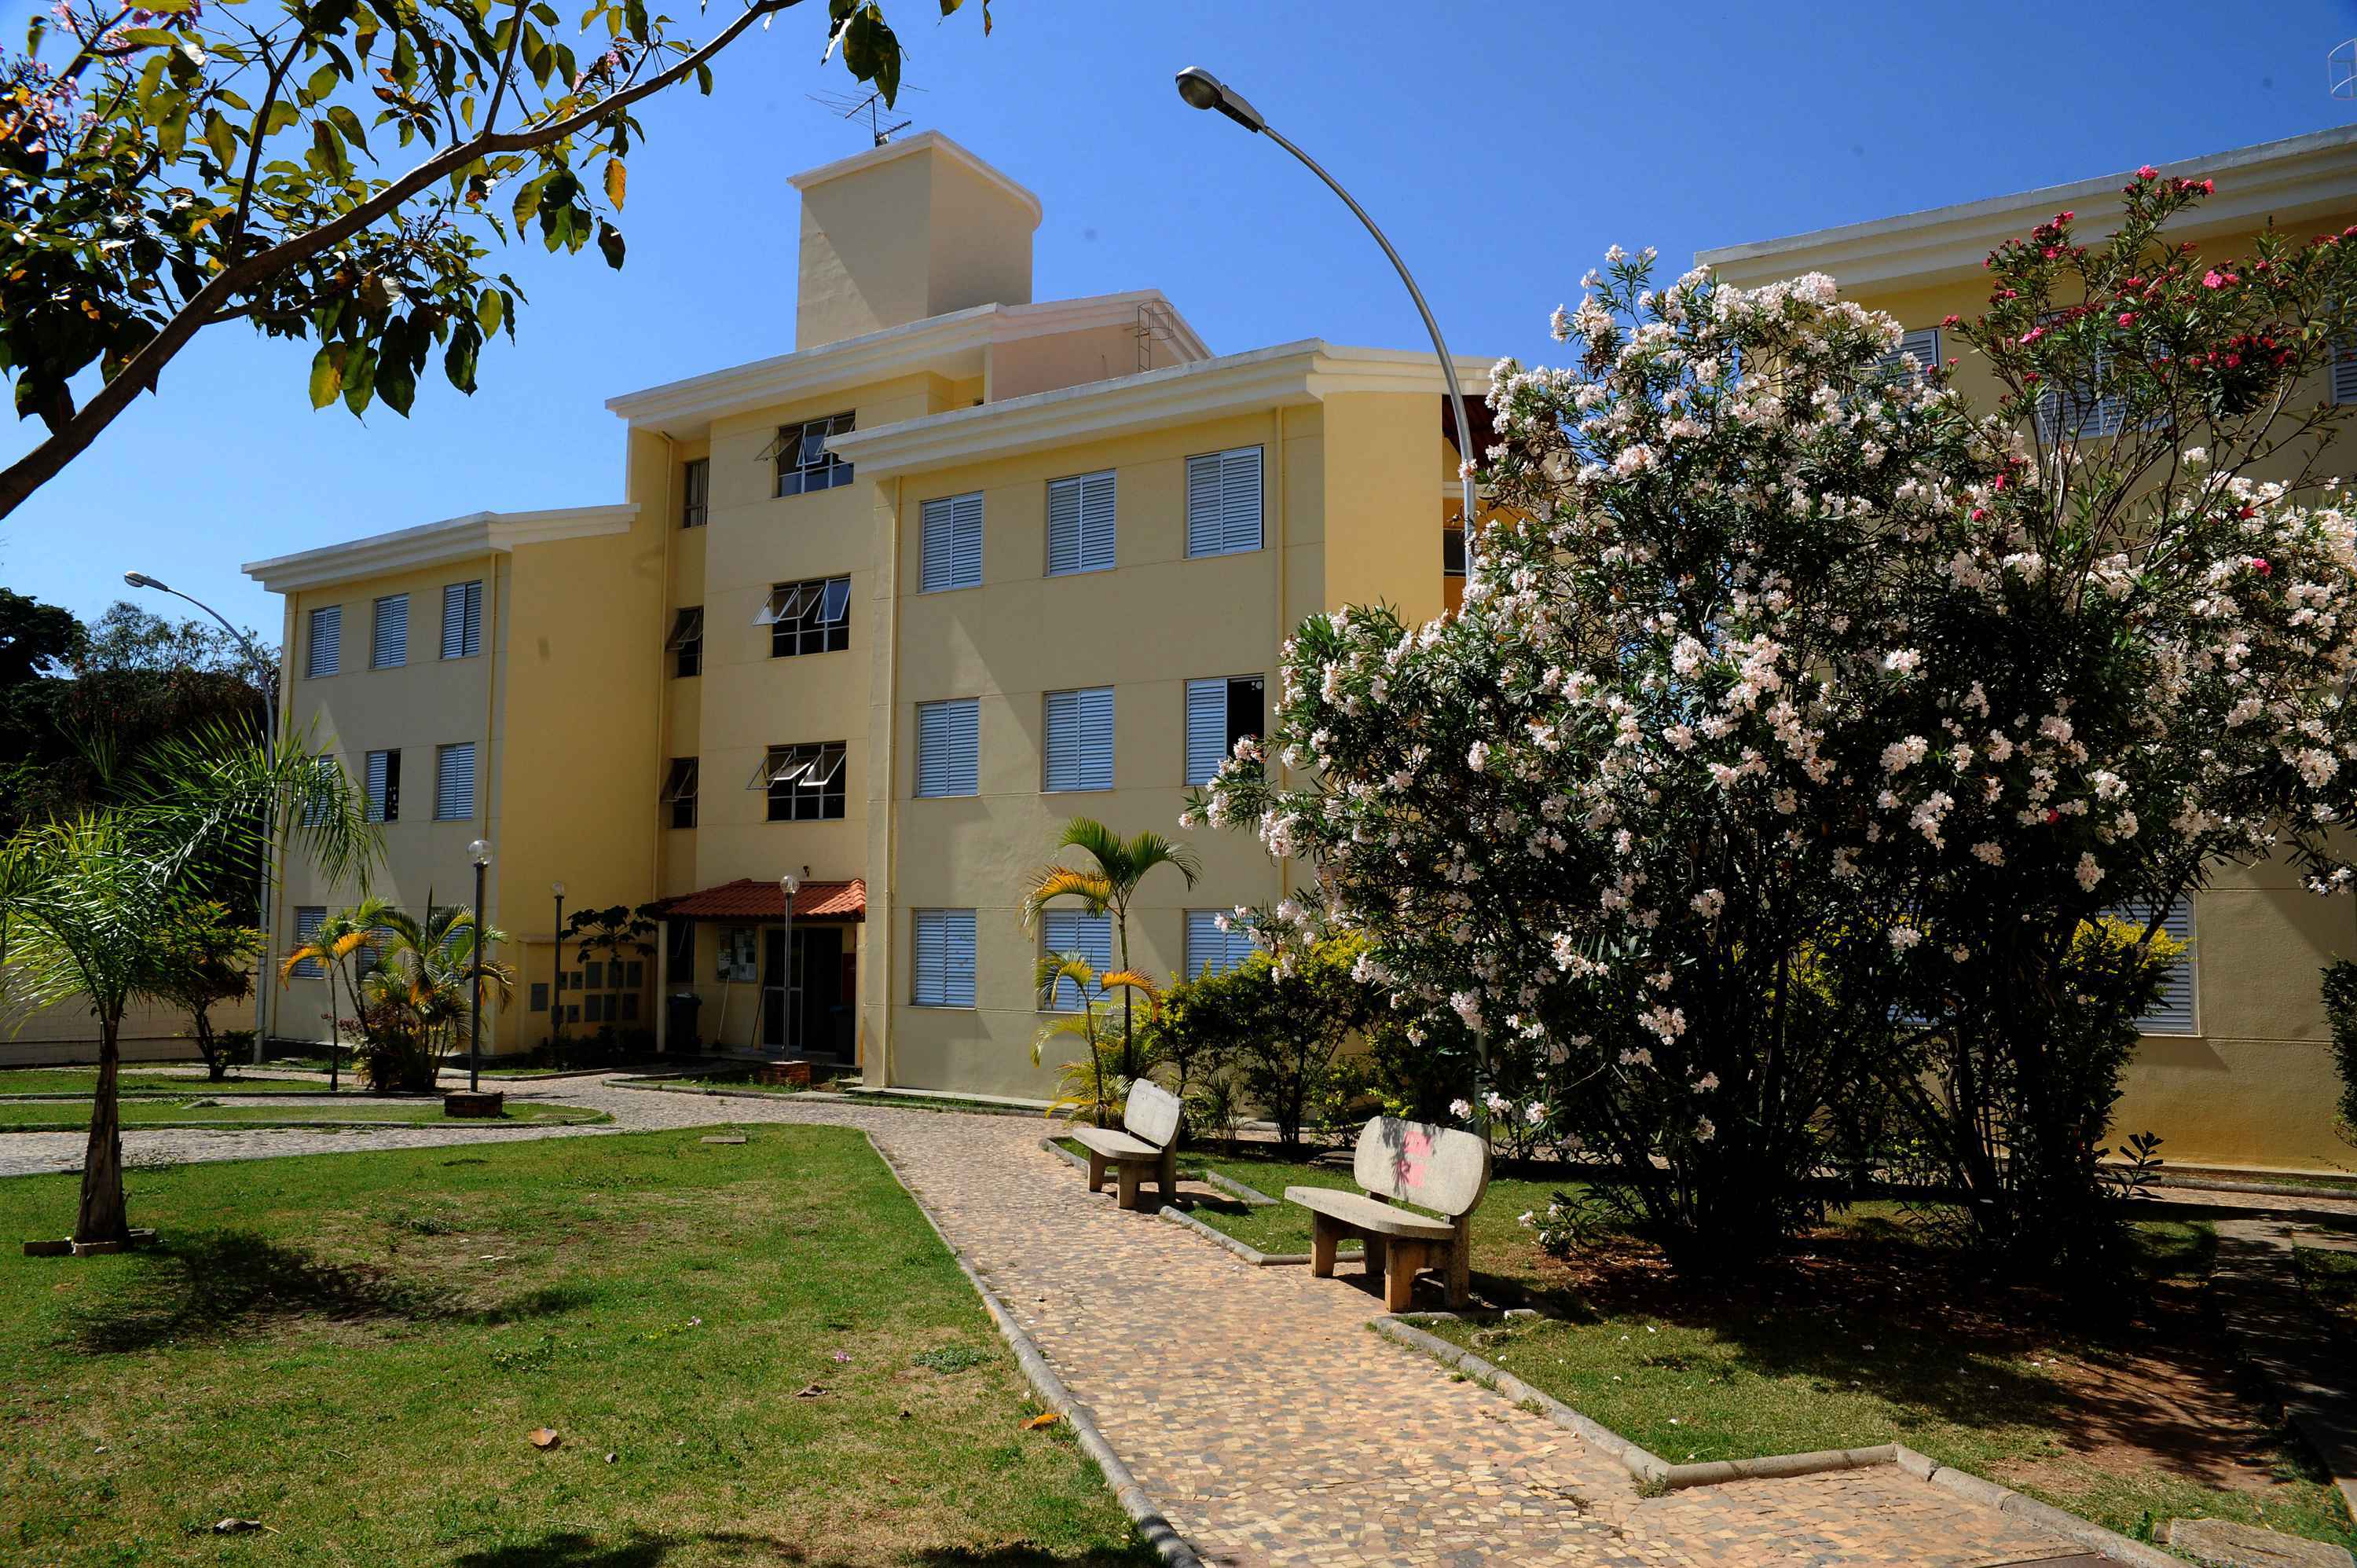 Moradia Universitária Ouro Preto I